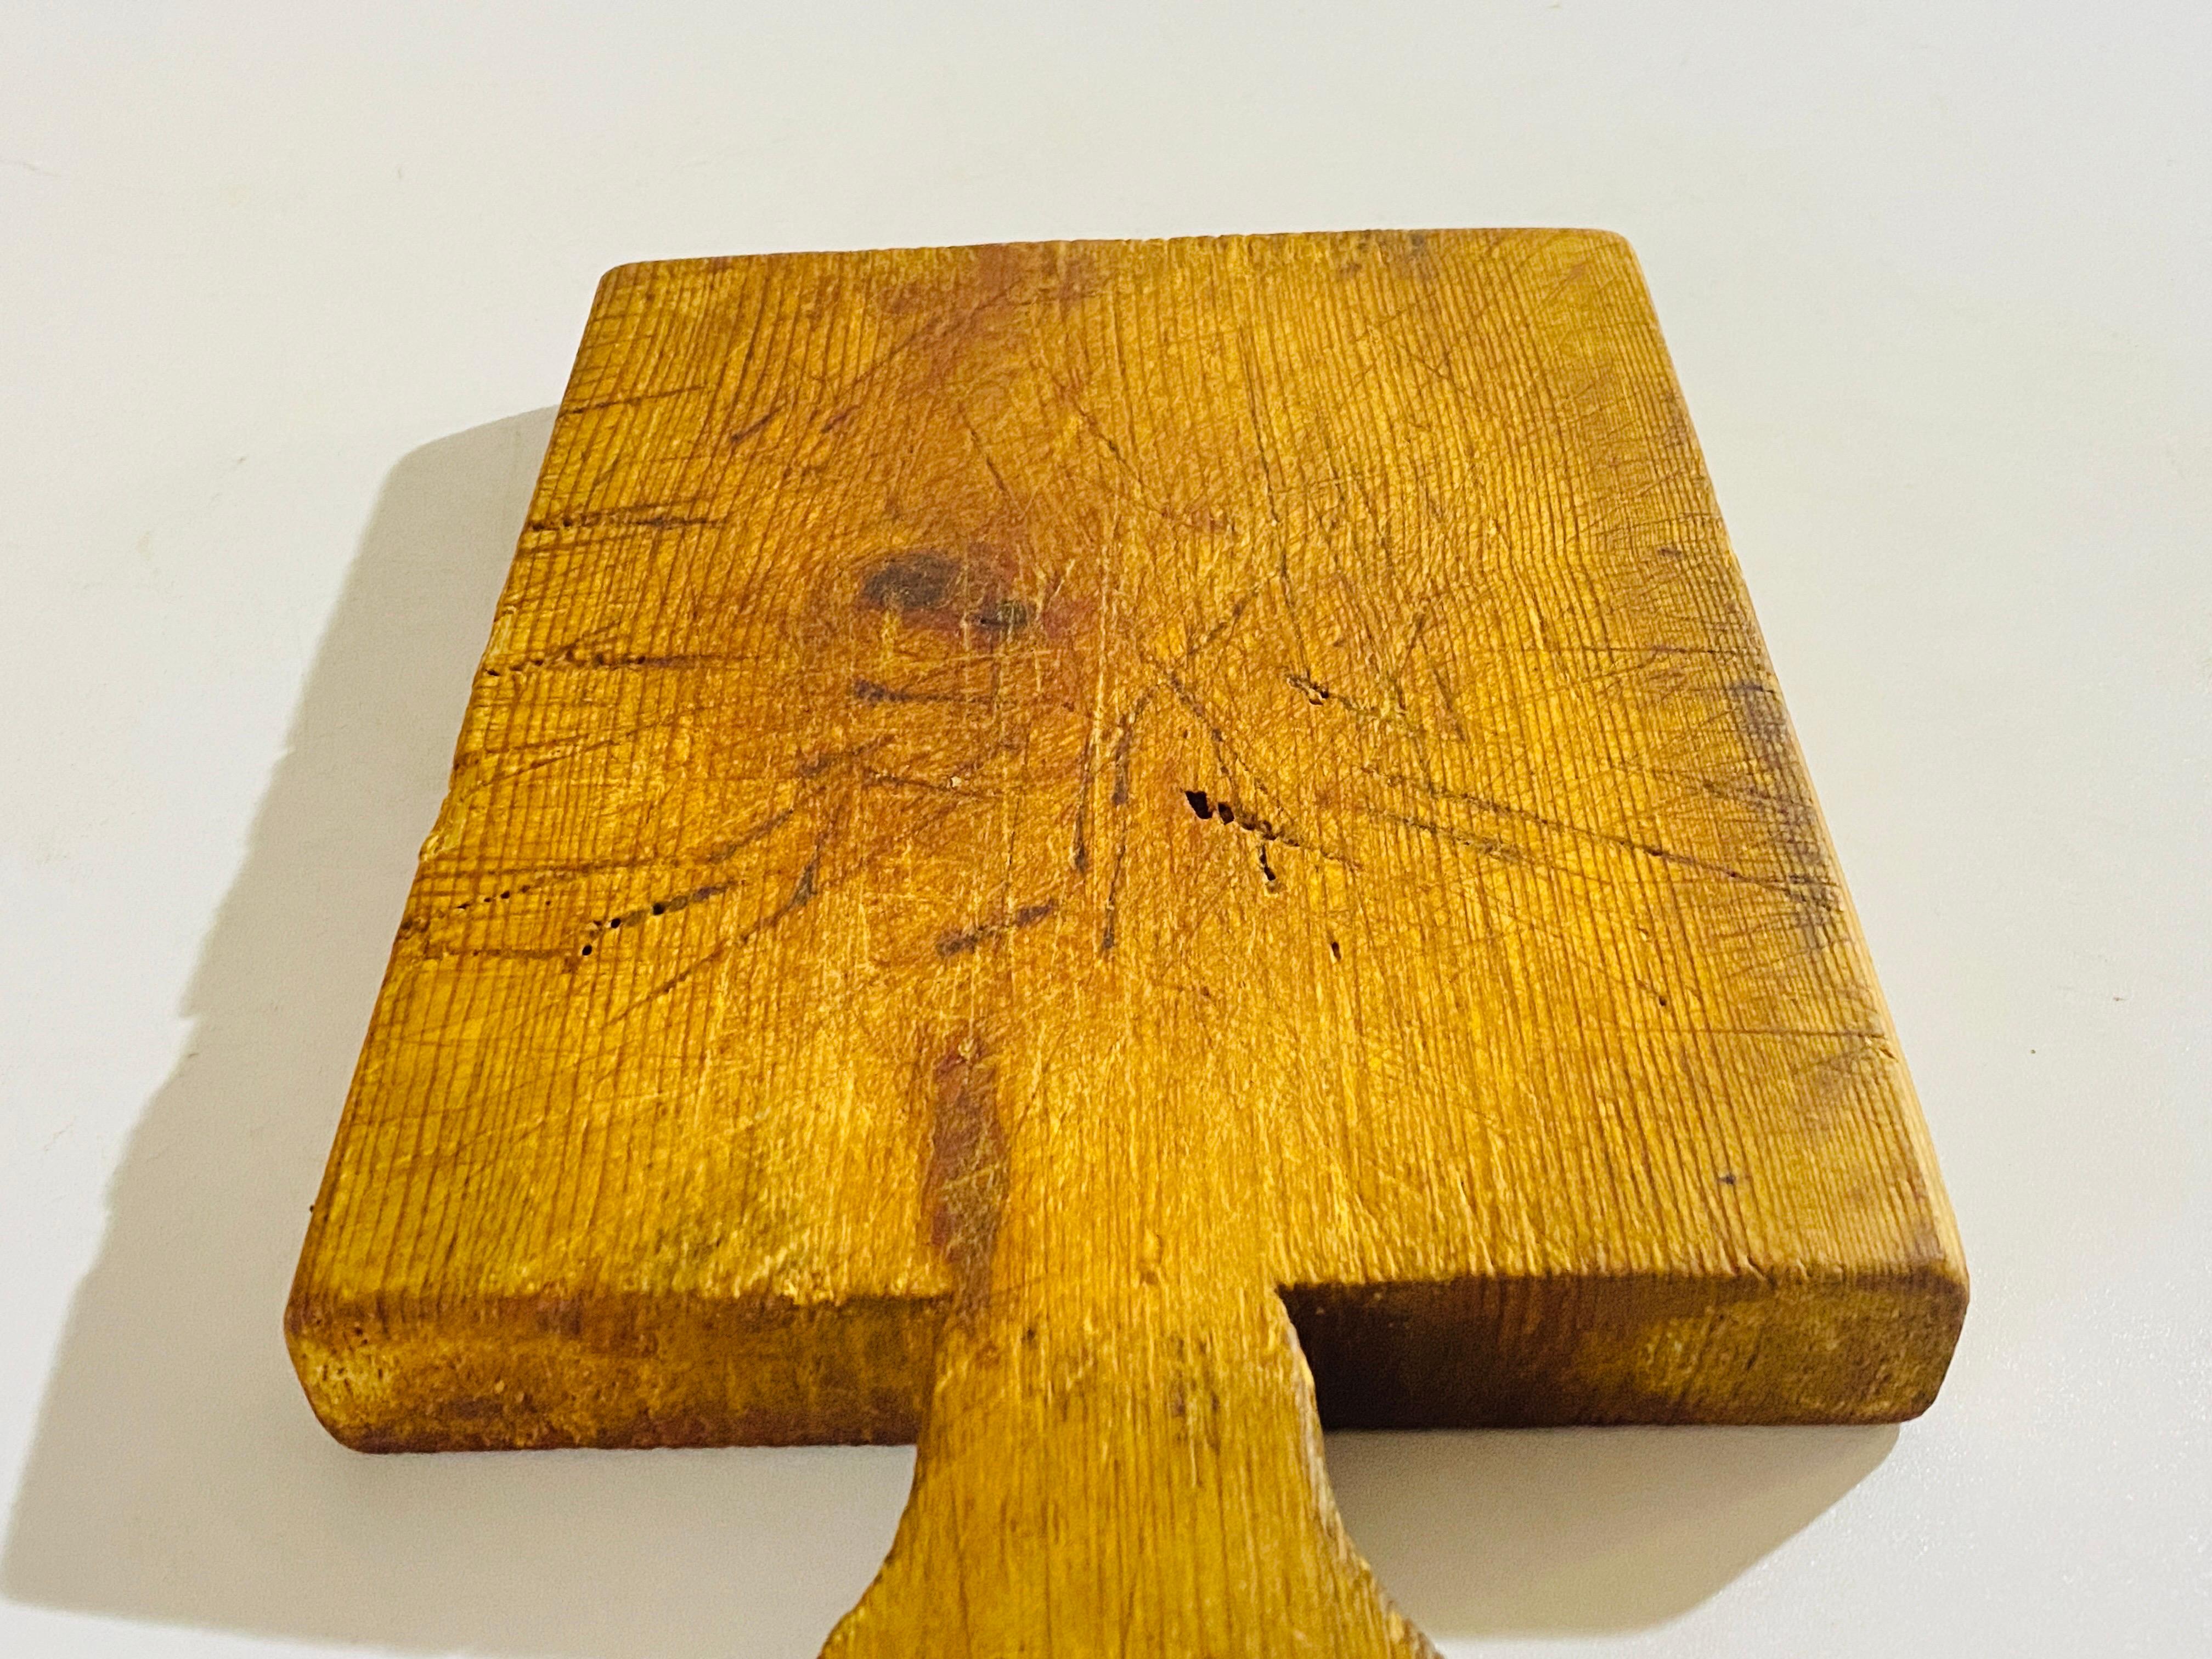 Planche à découper en bois, avec sa patine ancienne. Il s'agit d'un objet du XXe siècle français, dans le style French Provincial de couleur brune, et dans un état correspondant à son âge et à son utilisation.